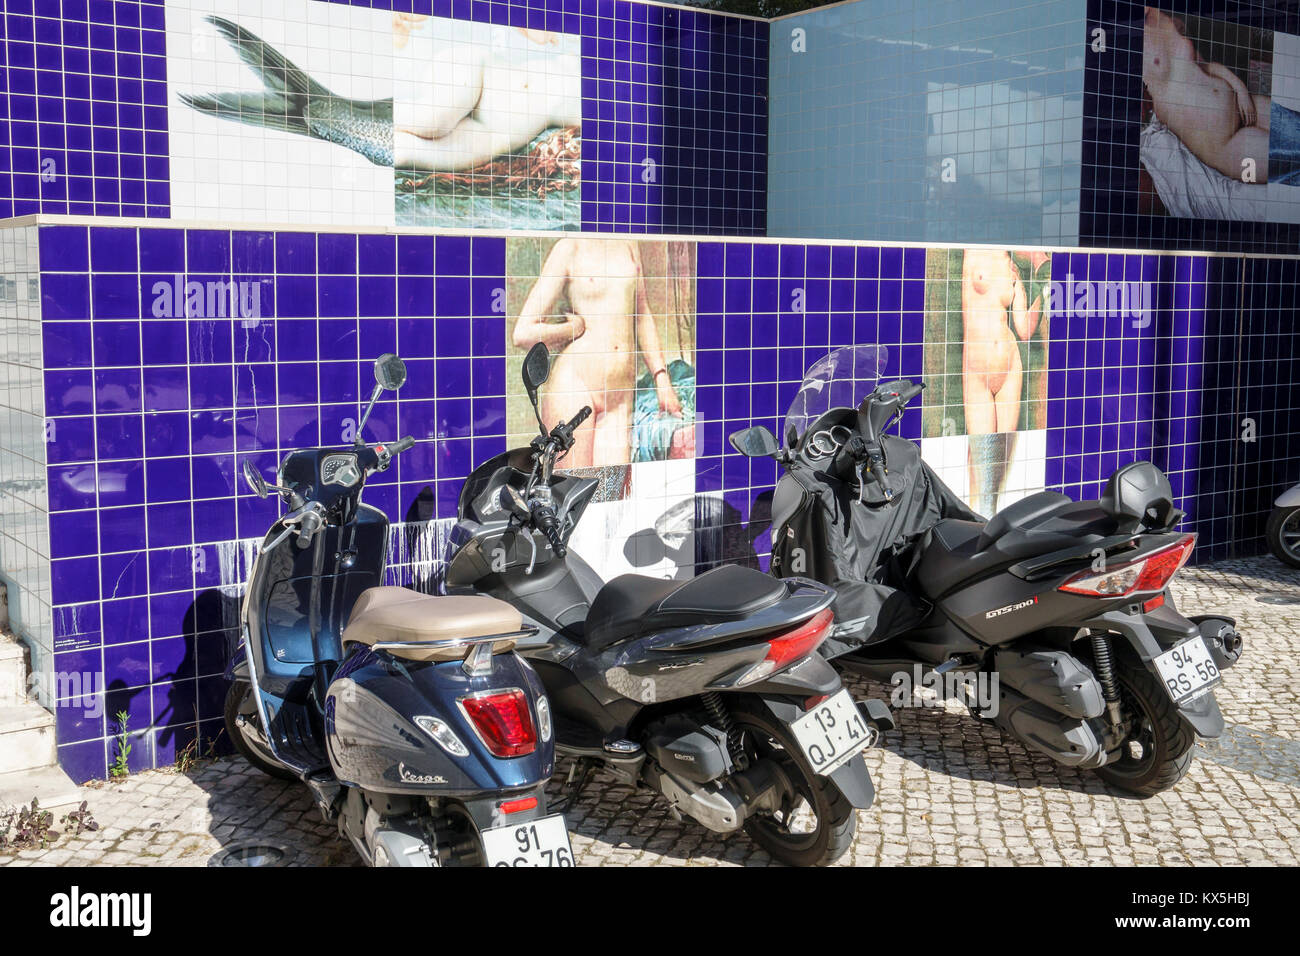 Lisbonne Portugal,Oriente,Parque das Nacoes,Parc des Nations,art public,Leonel Moura,peinture murale carreaux,Sereias,sirens,moto,scooter,garée,HISP Banque D'Images